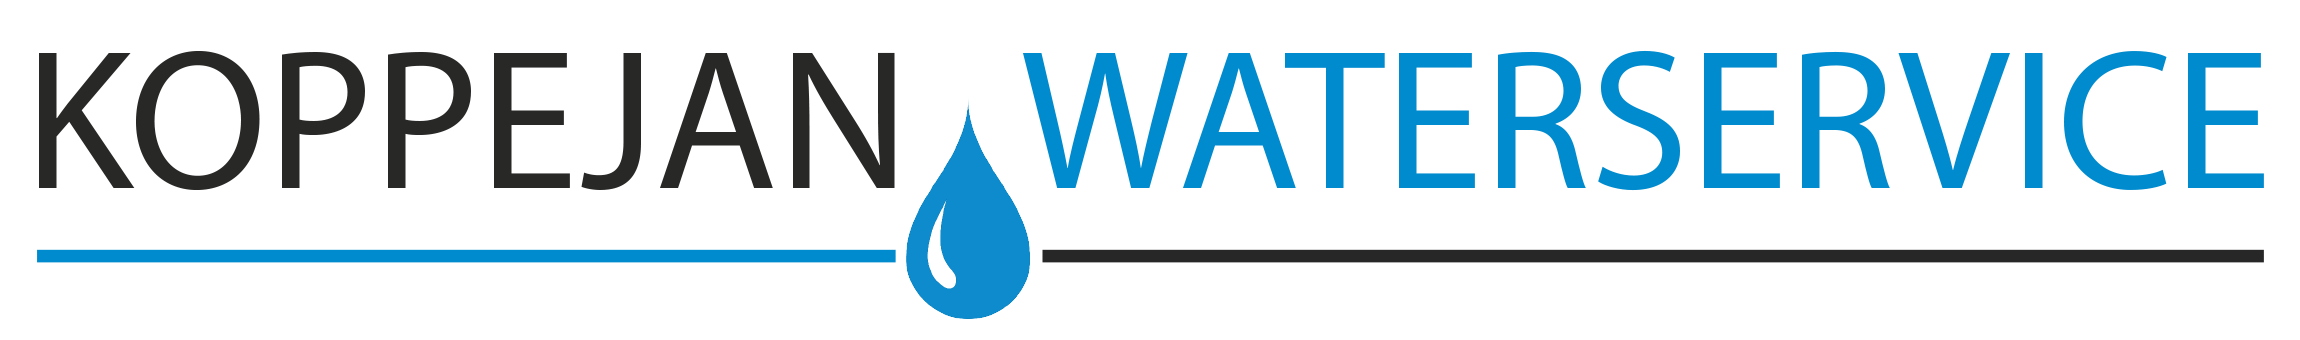 Waterverzachter prijs | Koppejan Waterservice